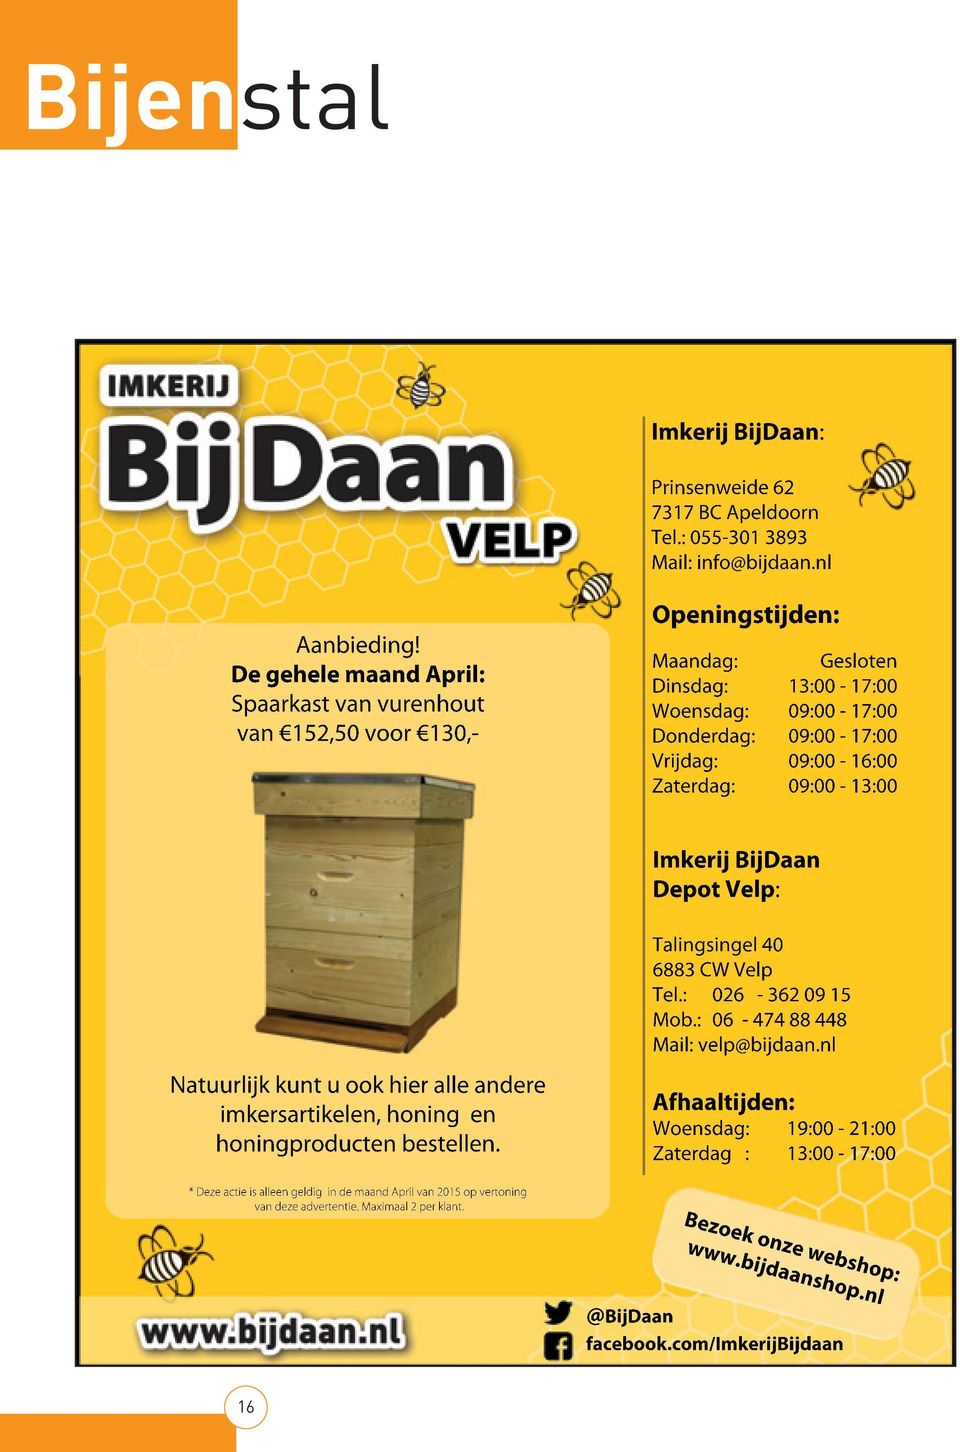 Zaterdag: 09:00-13:00 Imkerij BijDaan Depot Velp: Natuurlijk kunt u ook hier alle andere imkersartikelen, honing en honingproducten bestellen. Talingsingel 40 6883 CW Velp Tel.